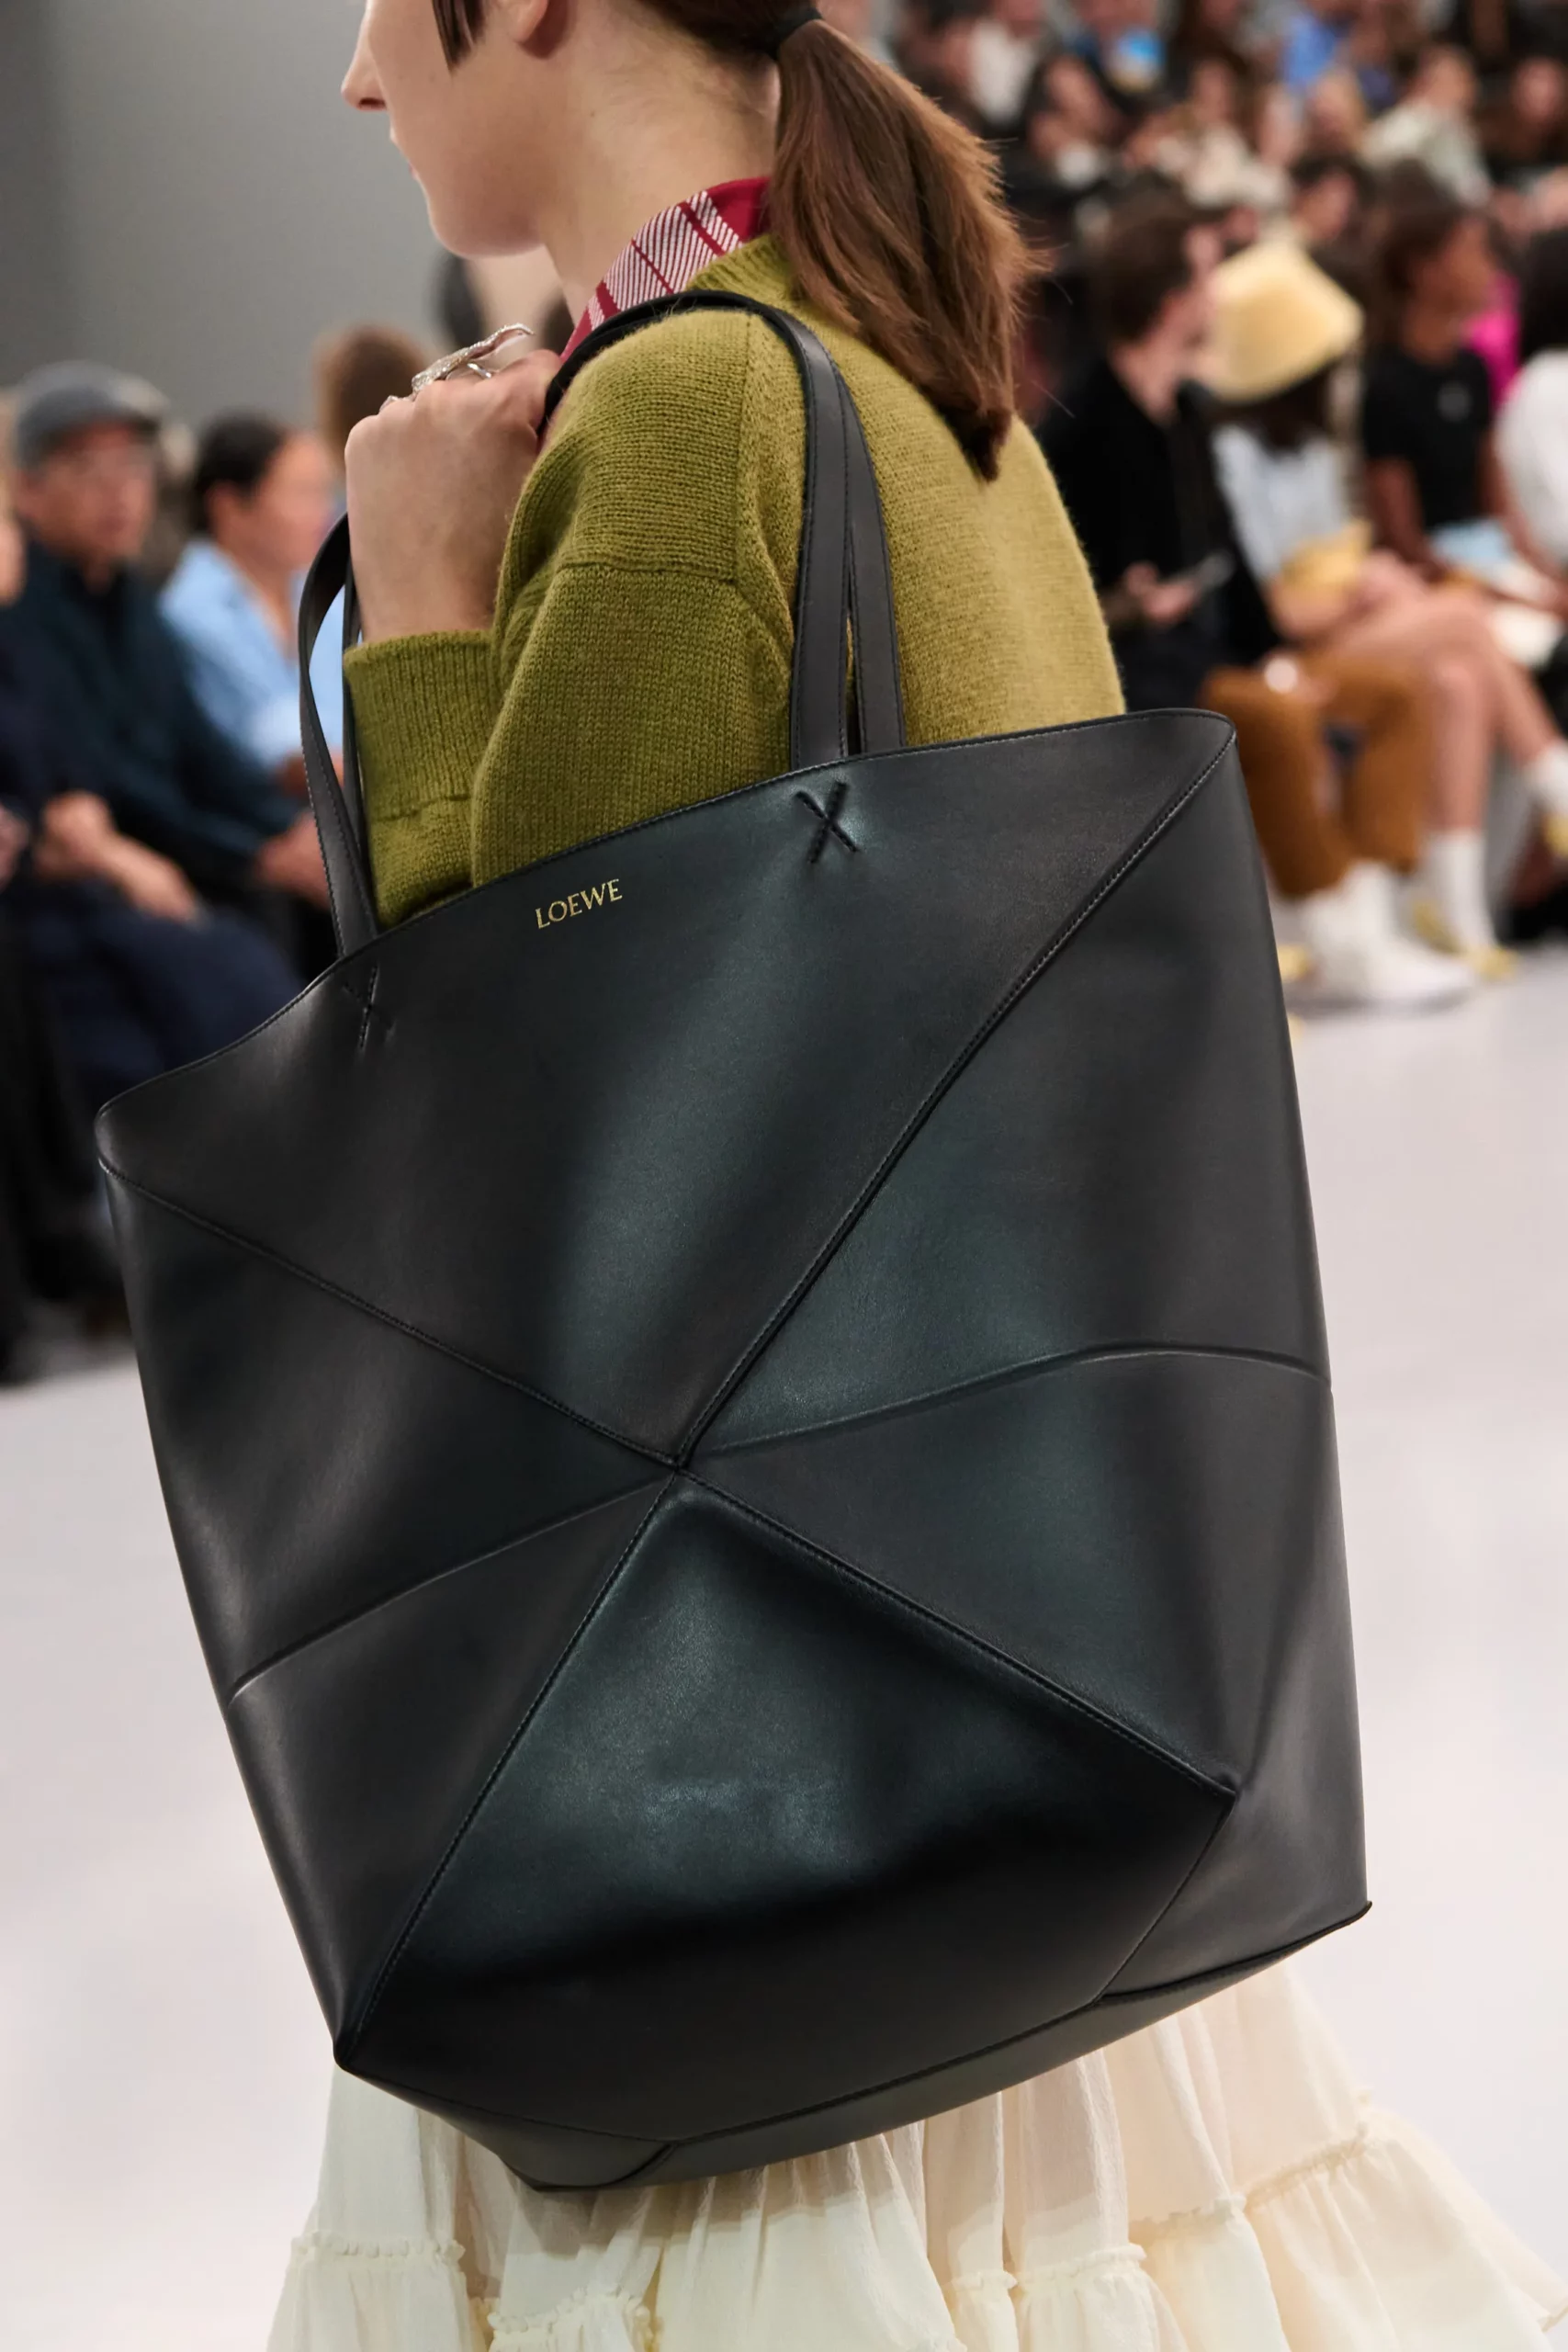 Luxury tote bags for women - LOEWE